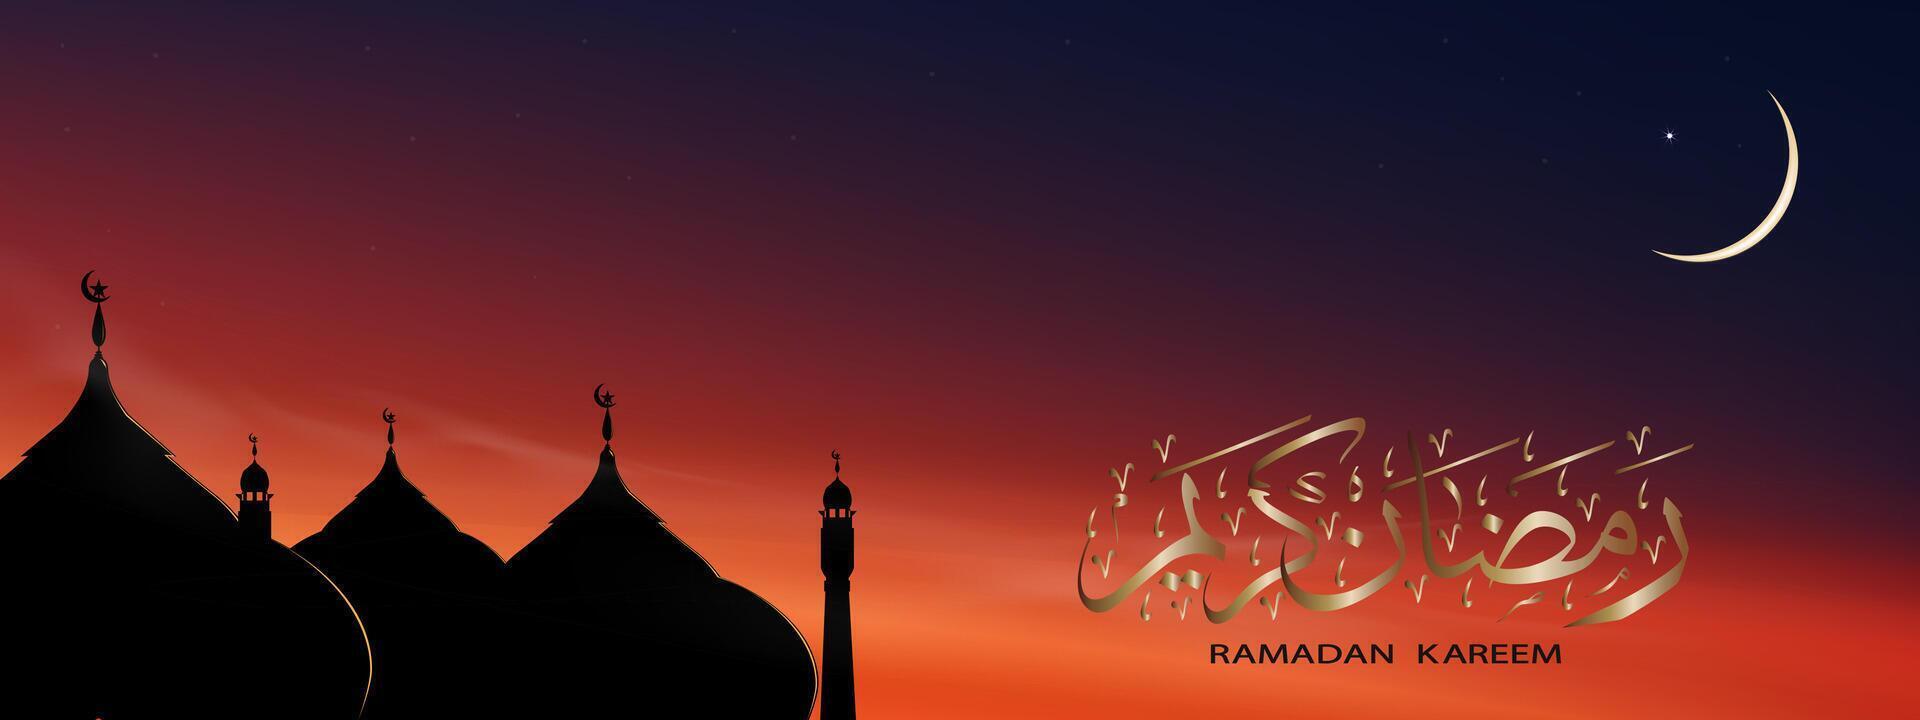 islámico antecedentes con Ramadán kareem caligrafía árabe, cúpula mezquitas,media luna Luna en azul cielo fondo, vector símbolo islámico religión con crepúsculo cielo, bandera eid Alabama adha, eid Alabama fitr mubarak